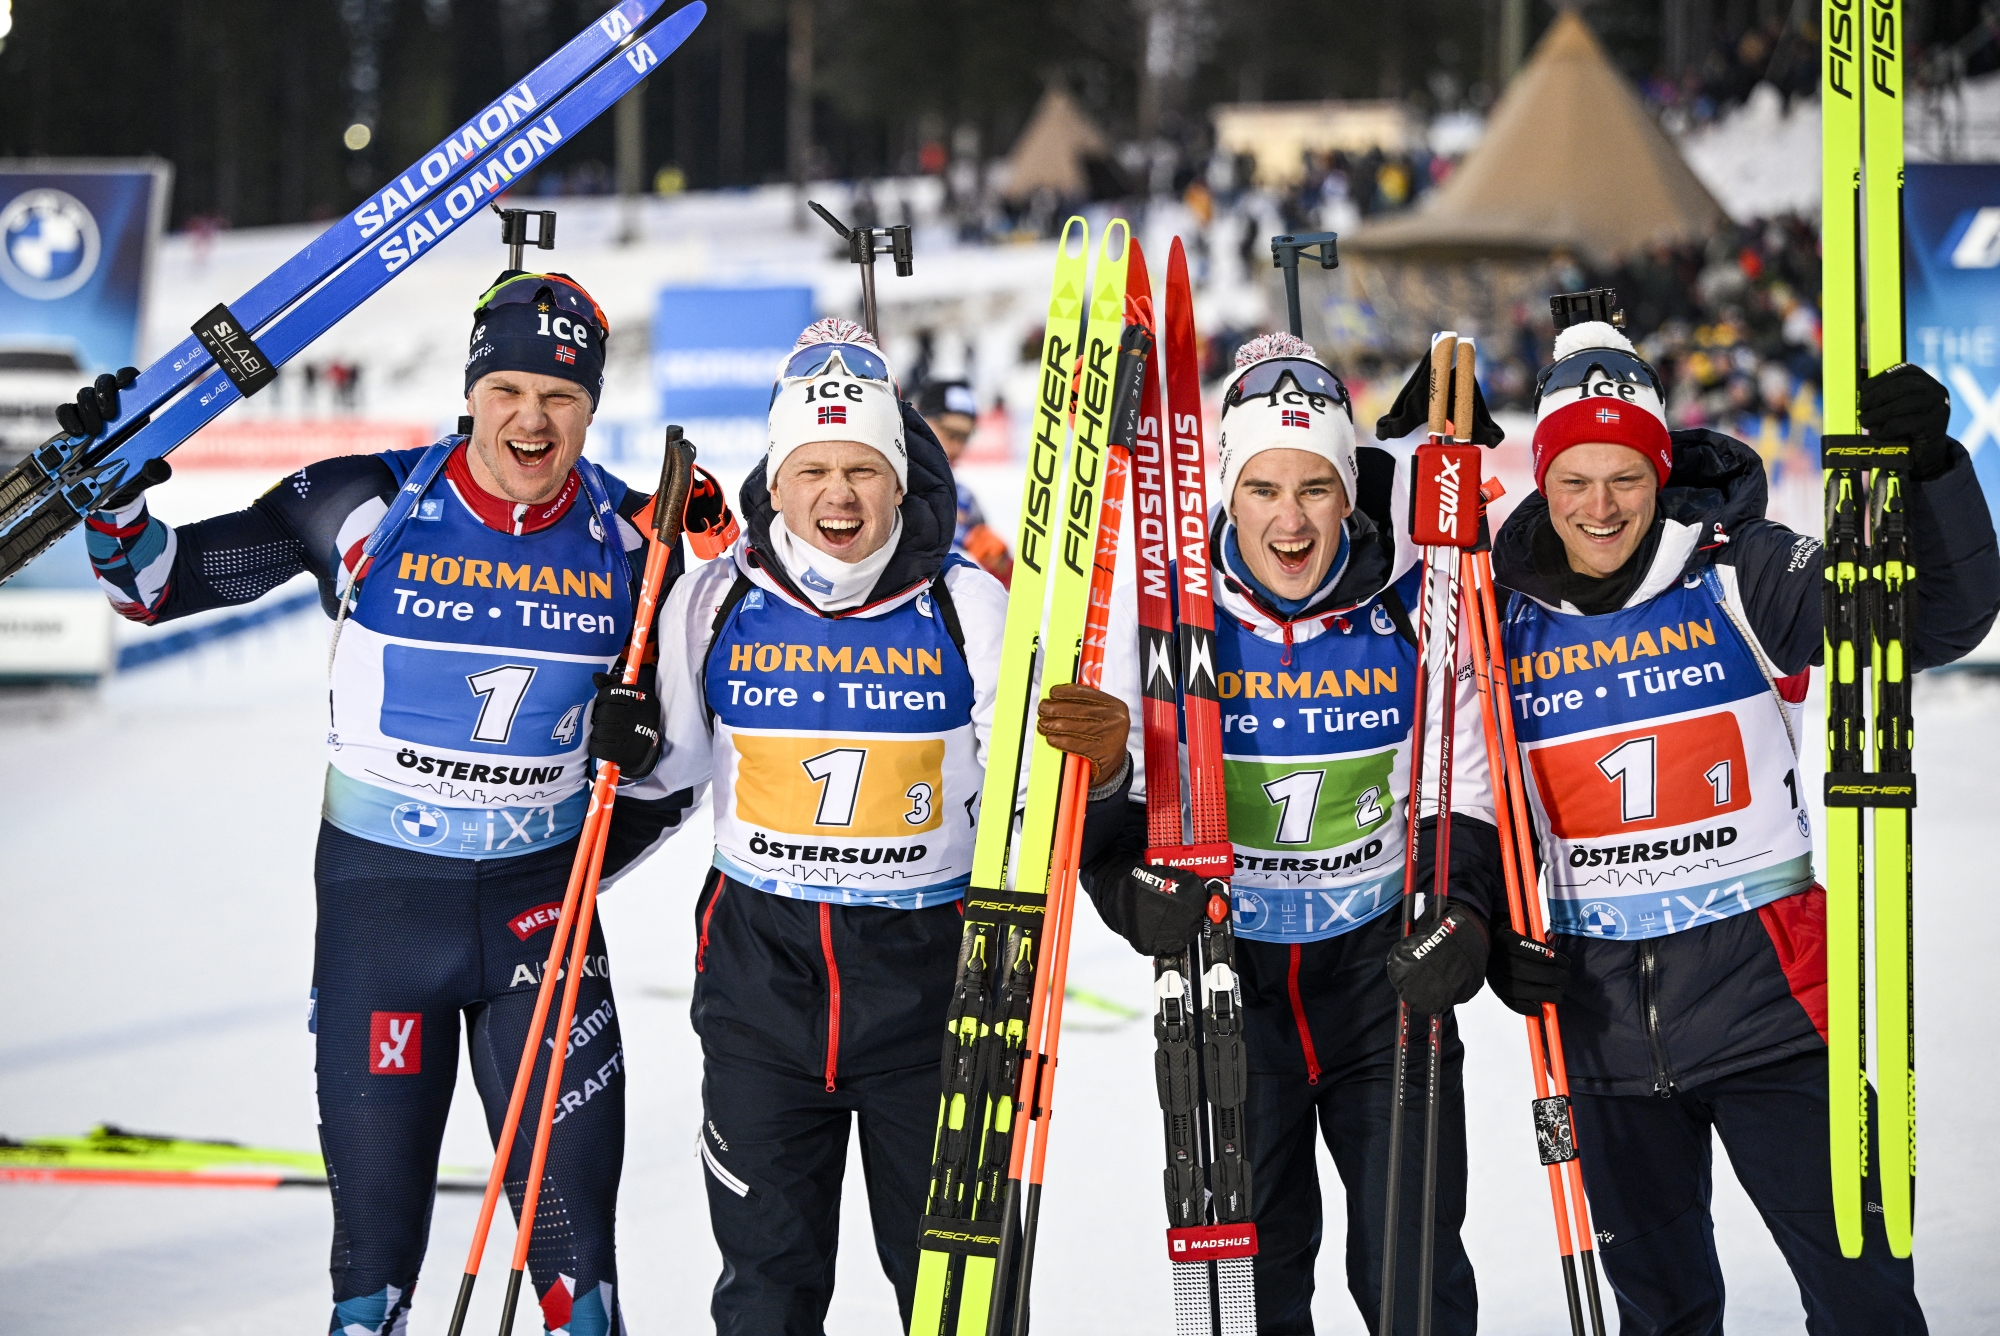 Norwegen gewinnt die Staffel der Männer (Bild: Anders Wiklund/TT News Agency/AFP)